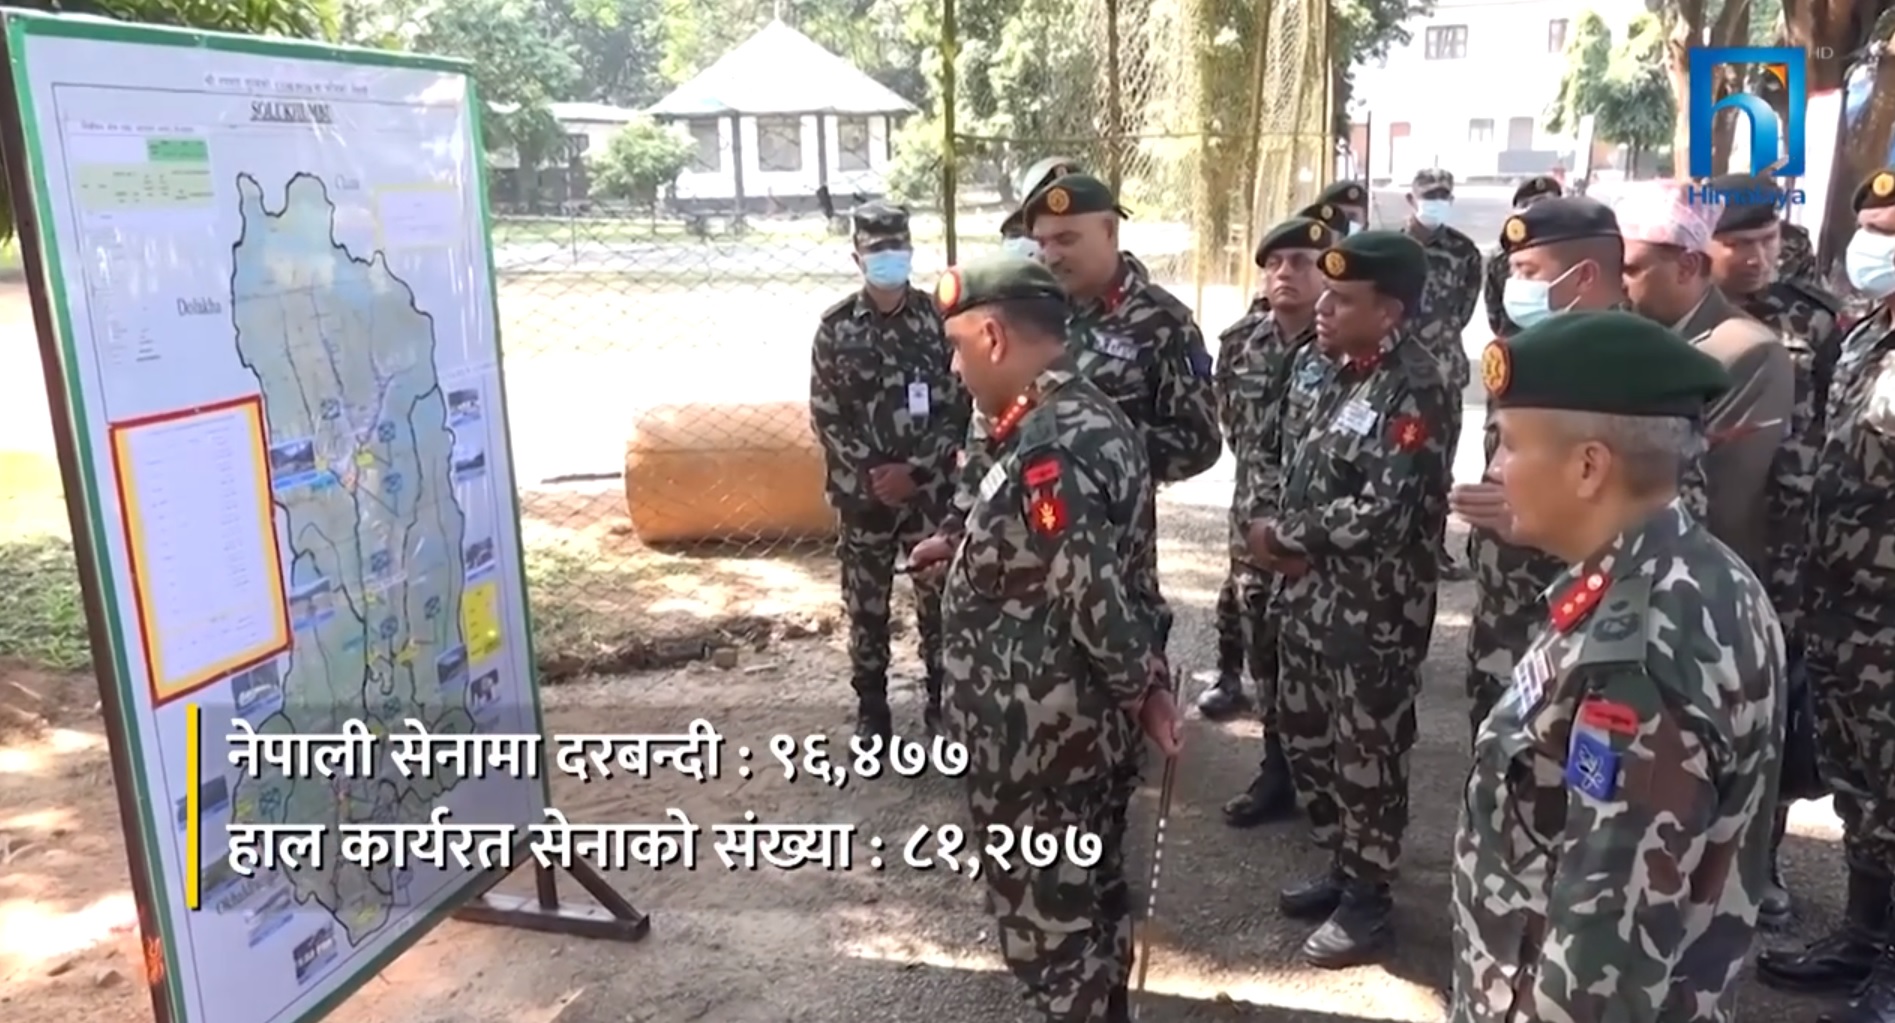 ठूलो संख्यामा रहेकाे नेपाली सेनाको भूमिका ठेक्कापट्टा र व्यापार (भिडियो रिपोर्टसहित)